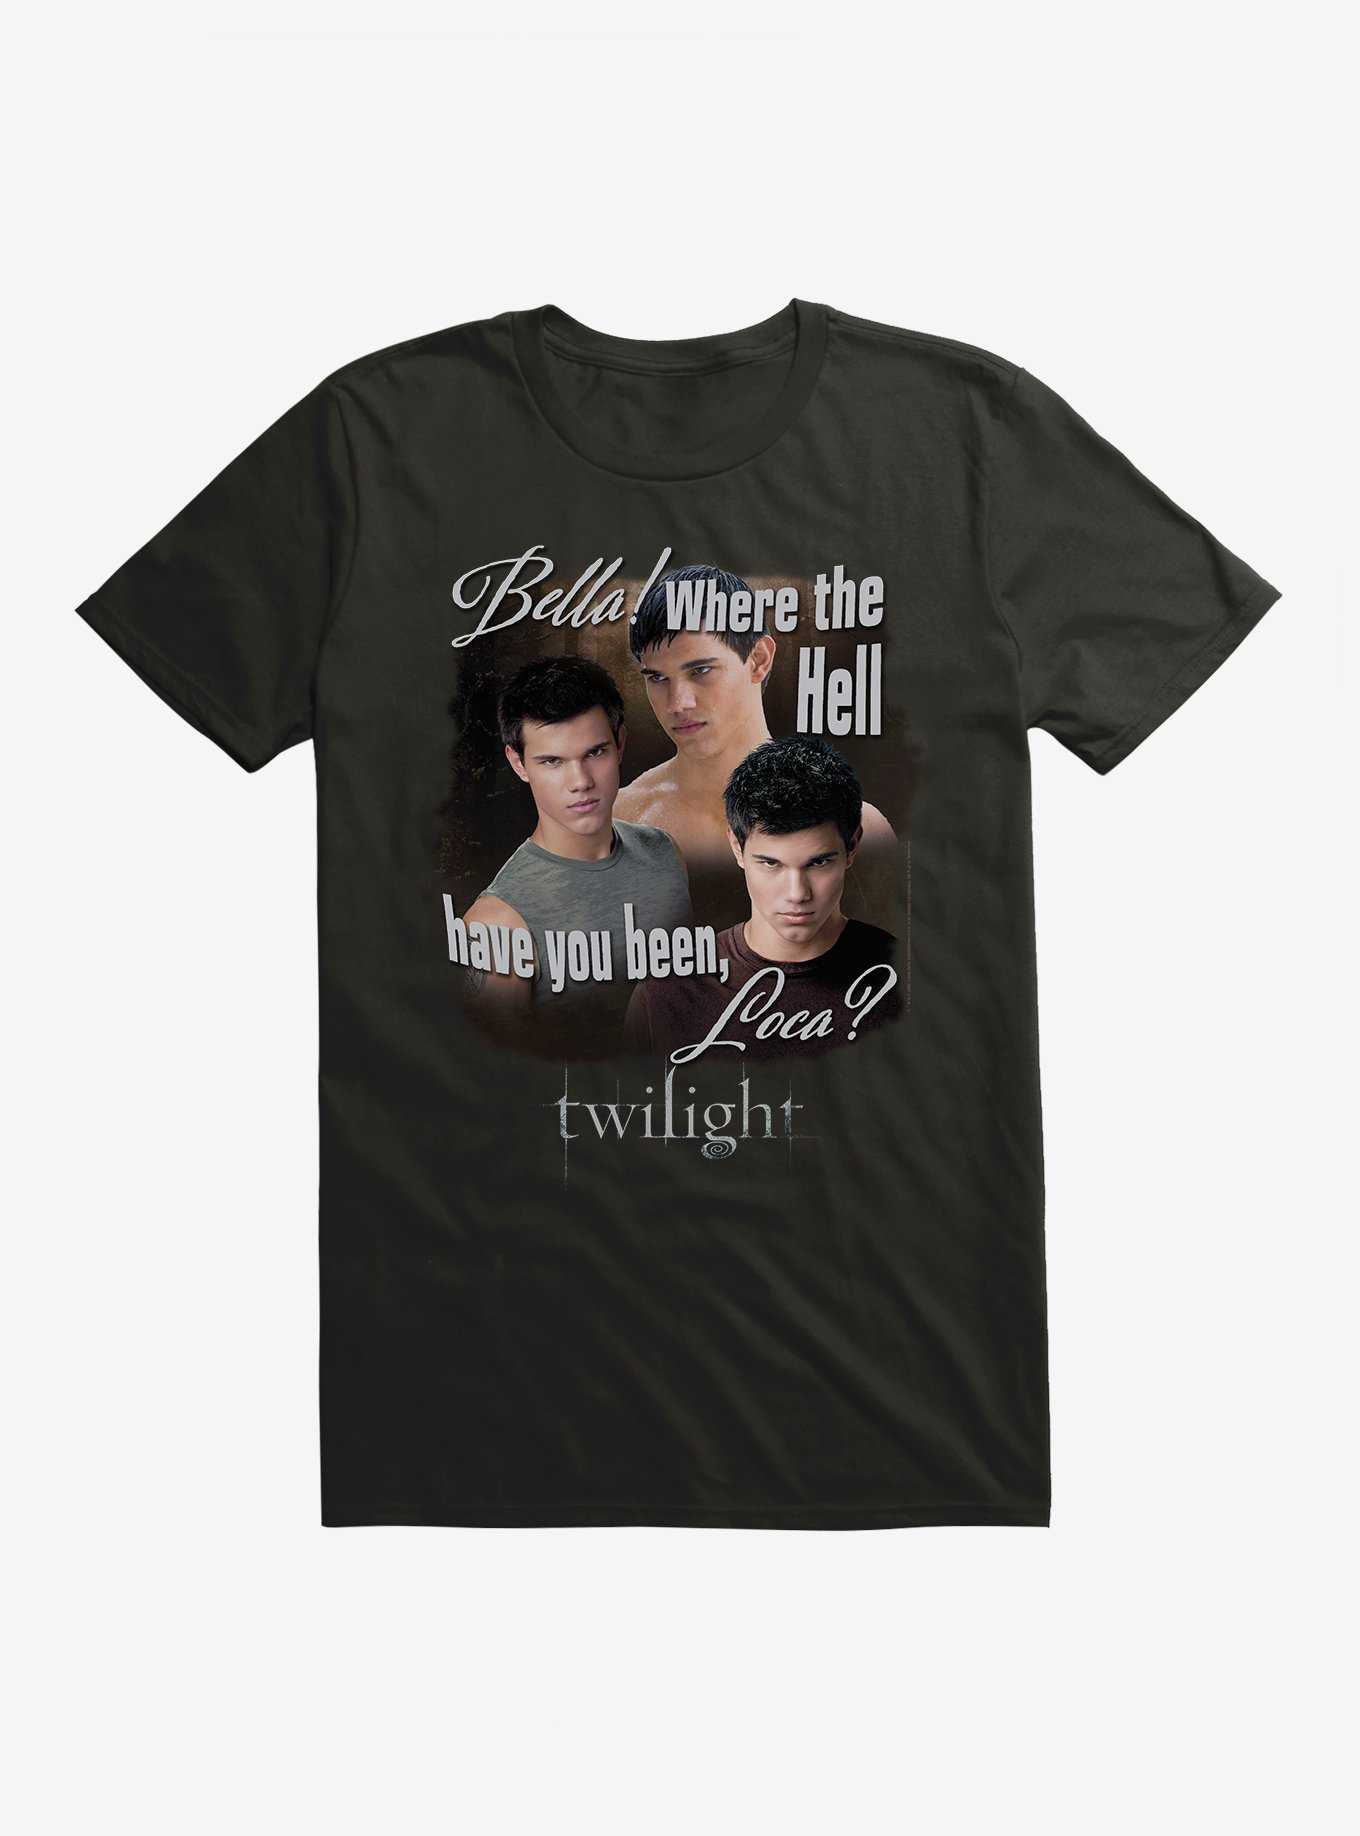 Twilight Jacob Where You Been Loca T-Shirt, , hi-res